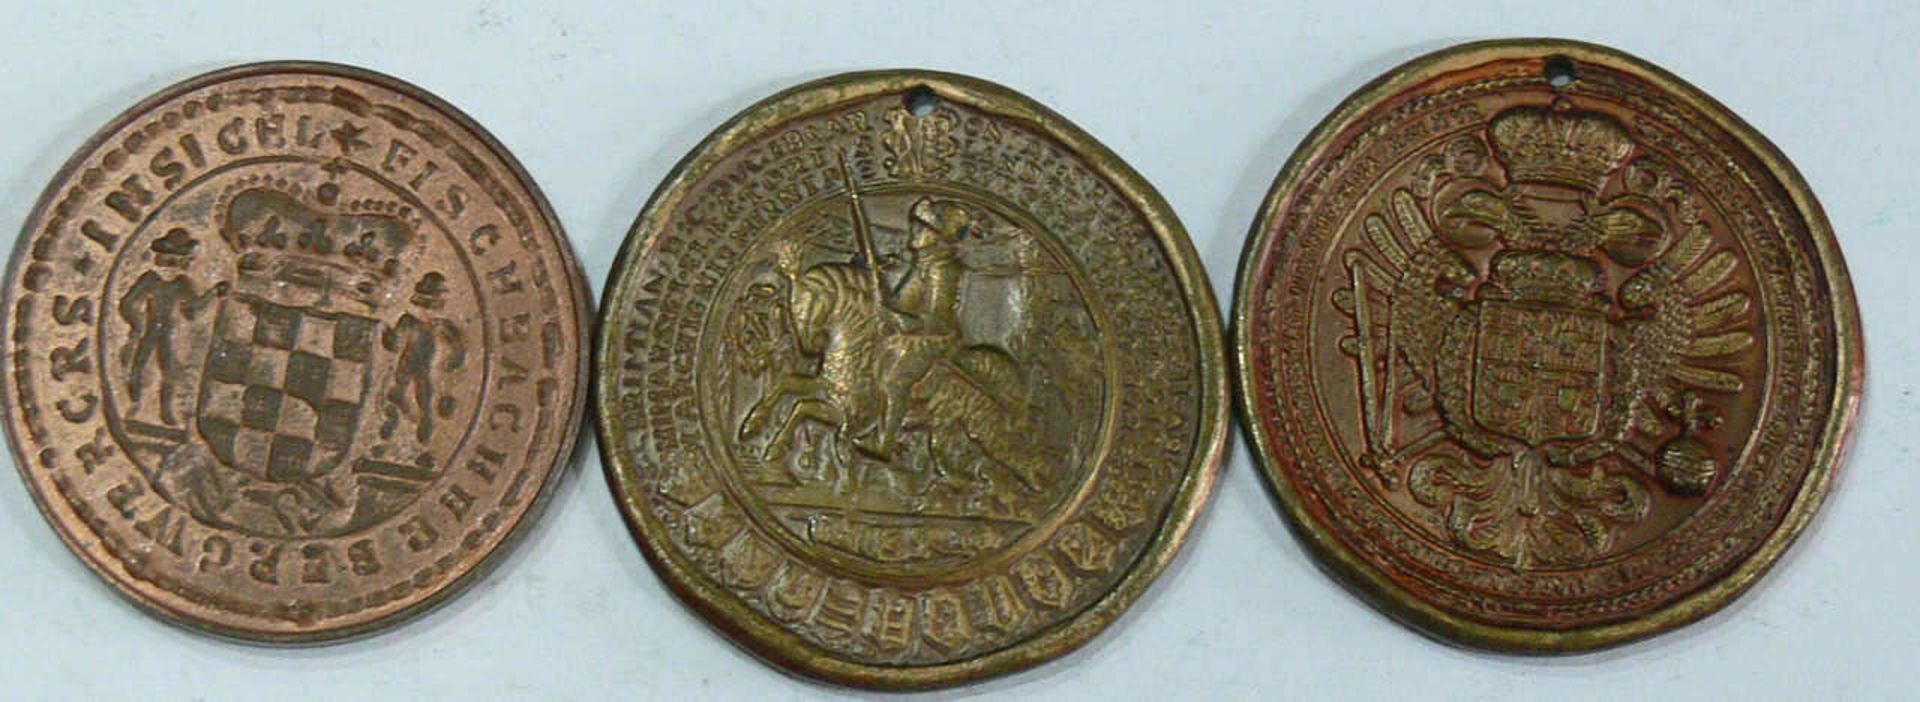 Konvolut Medaillen, bestehend aus: Großes Siegel Karls VI., Reitersiegel Kurfürst Christians I.